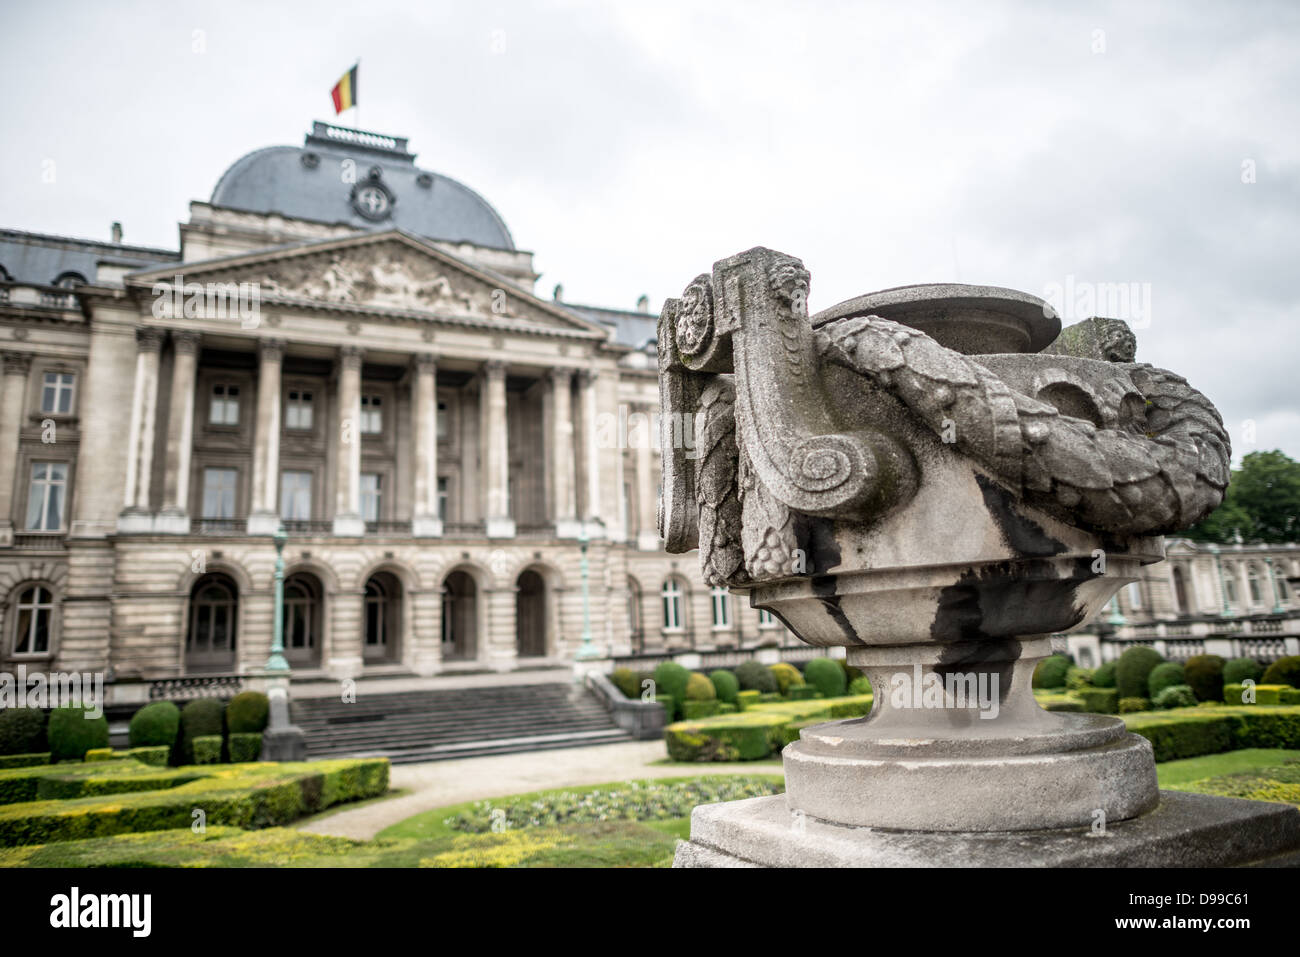 Bruxelles, Belgique - Une urne devant le Palais Royal de Bruxelles, le palais de la famille royale belge. Banque D'Images